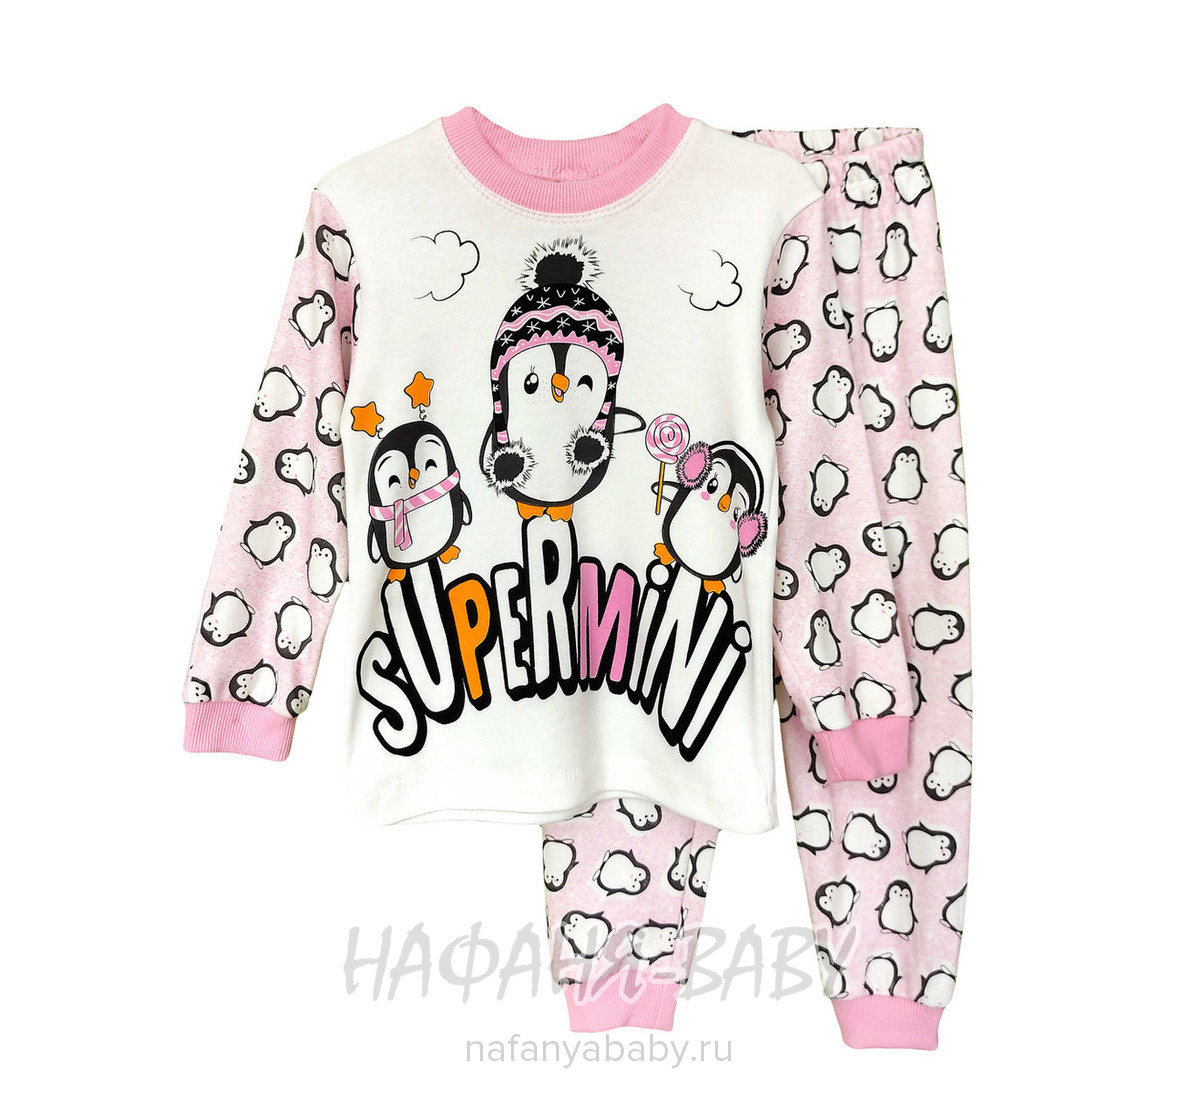 Детская пижама SUPERMINI арт: 3055, 1-4 года, 5-9 лет, оптом Турция